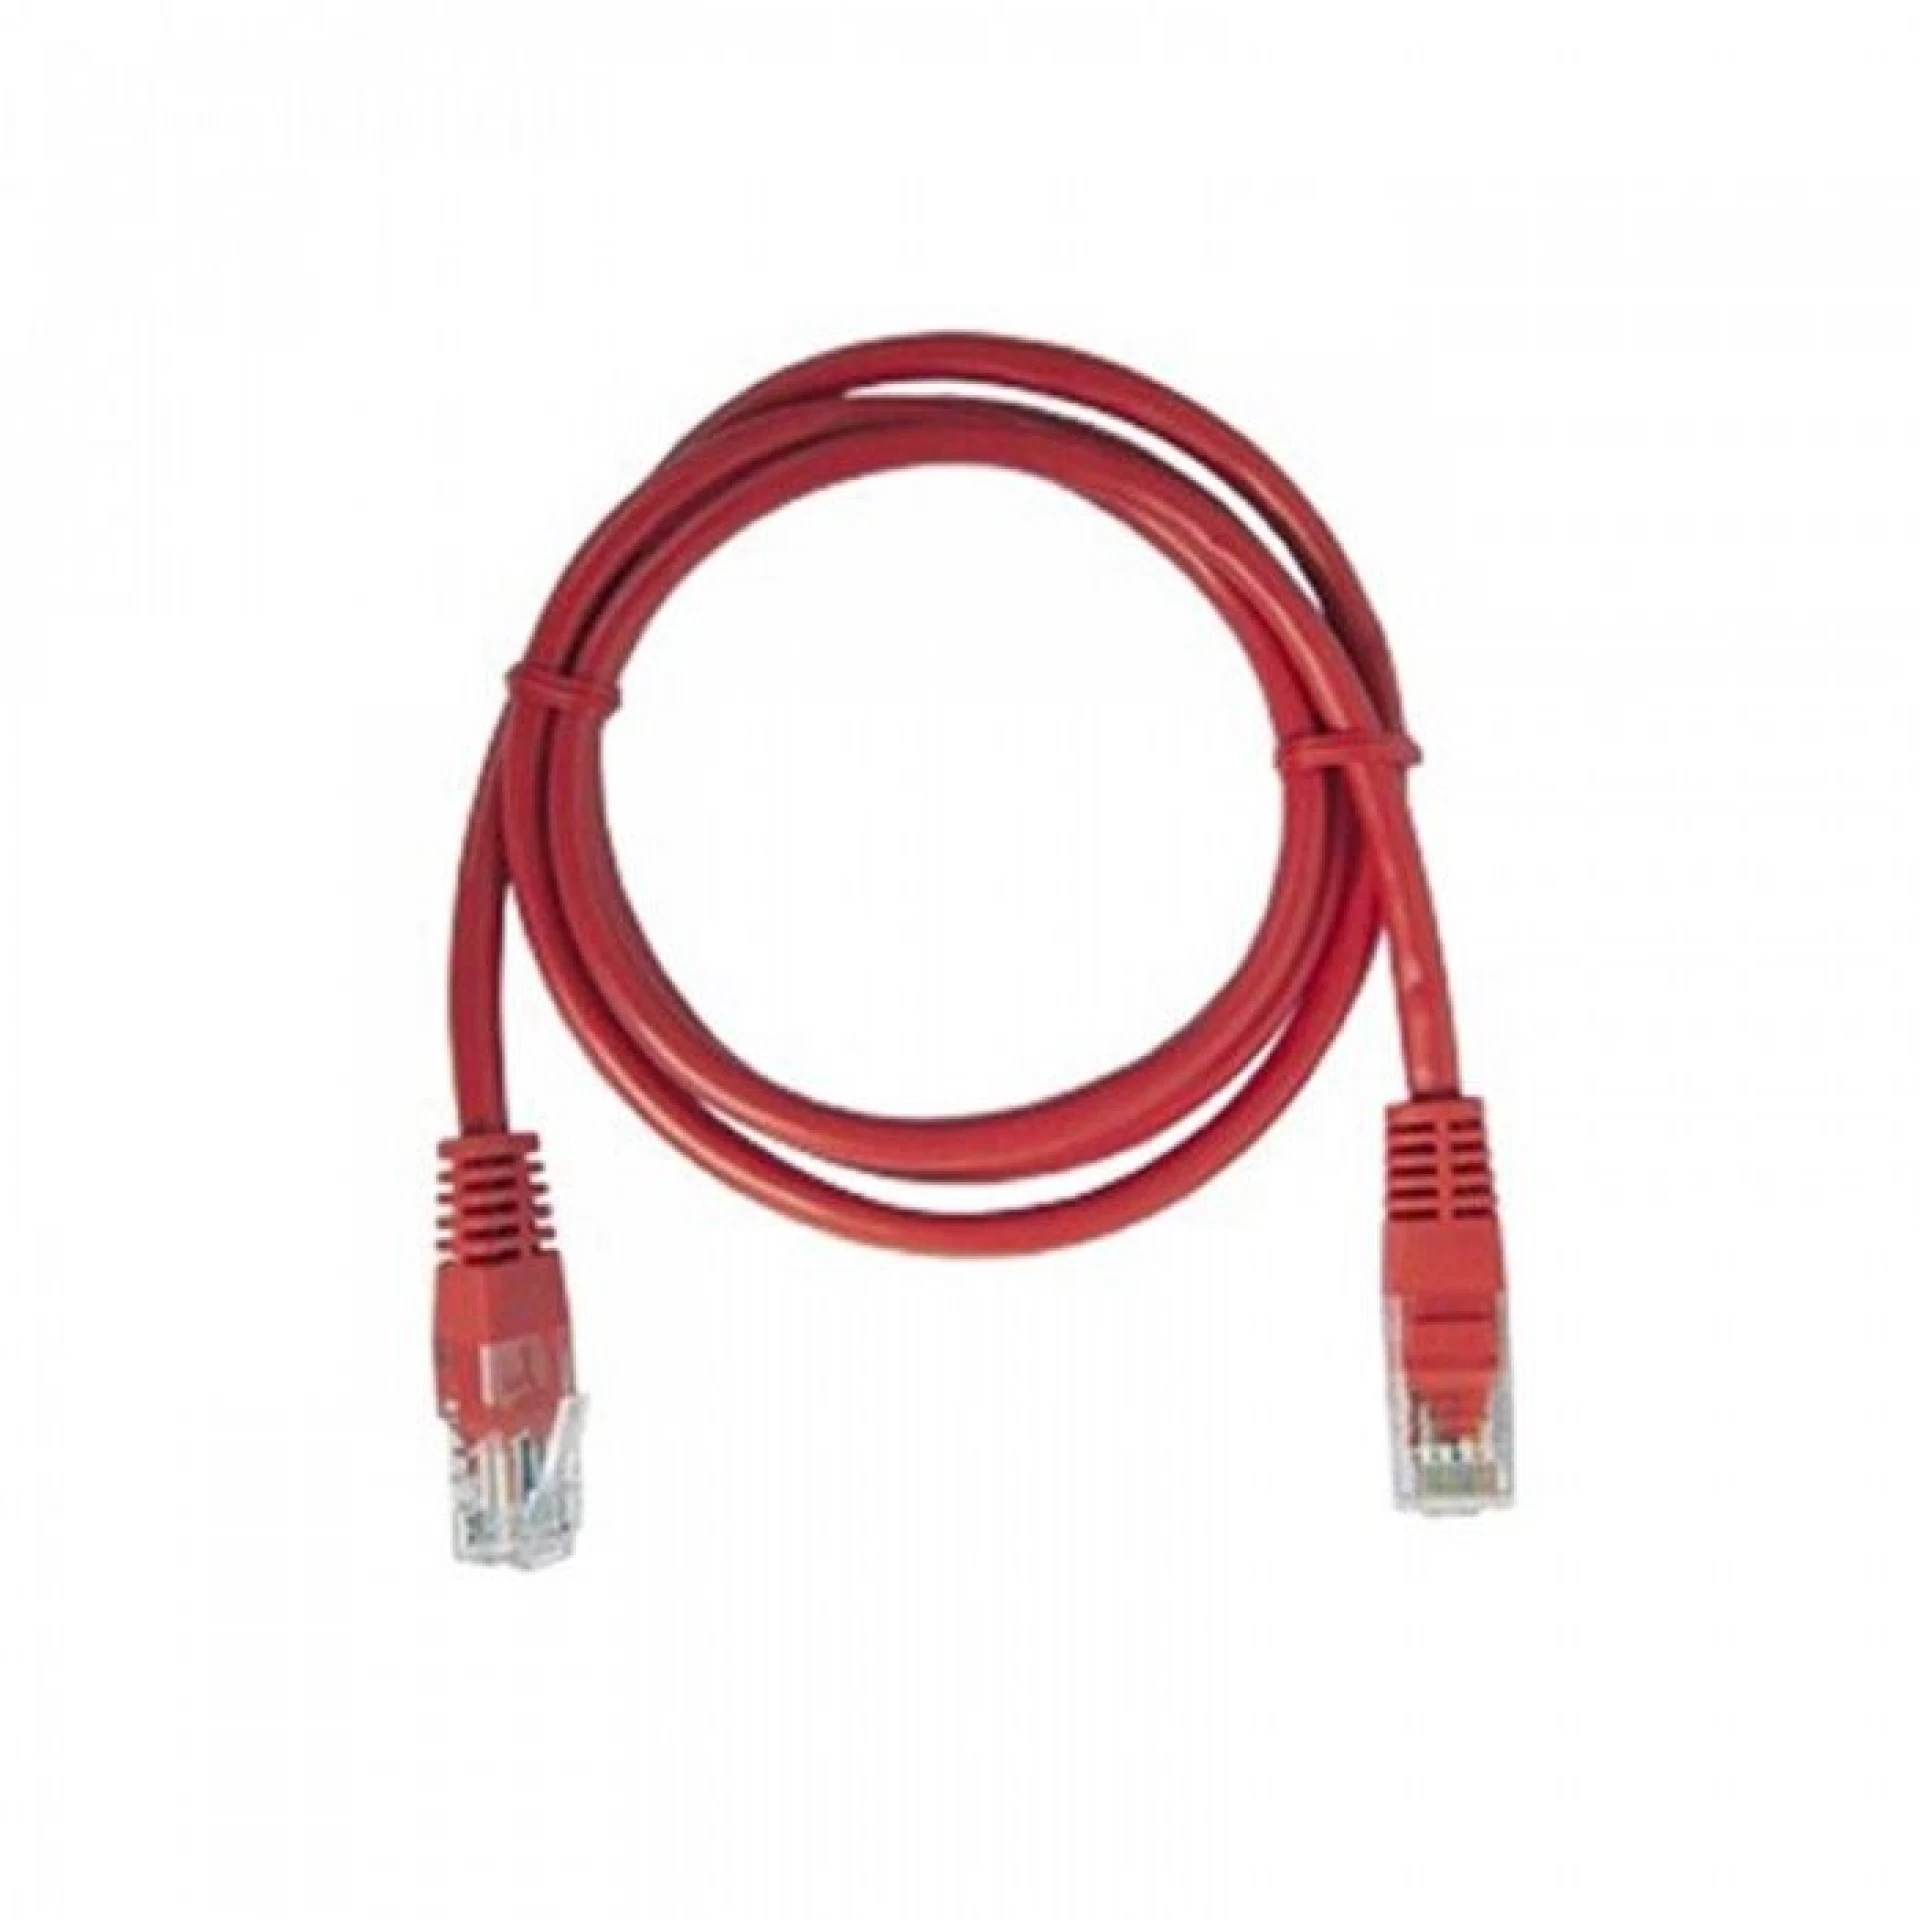 Cable UTP (LAN) De RED 1,2 Mt Rojo, Cable UTP (LAN) De RED 1,2 Mt Rojo